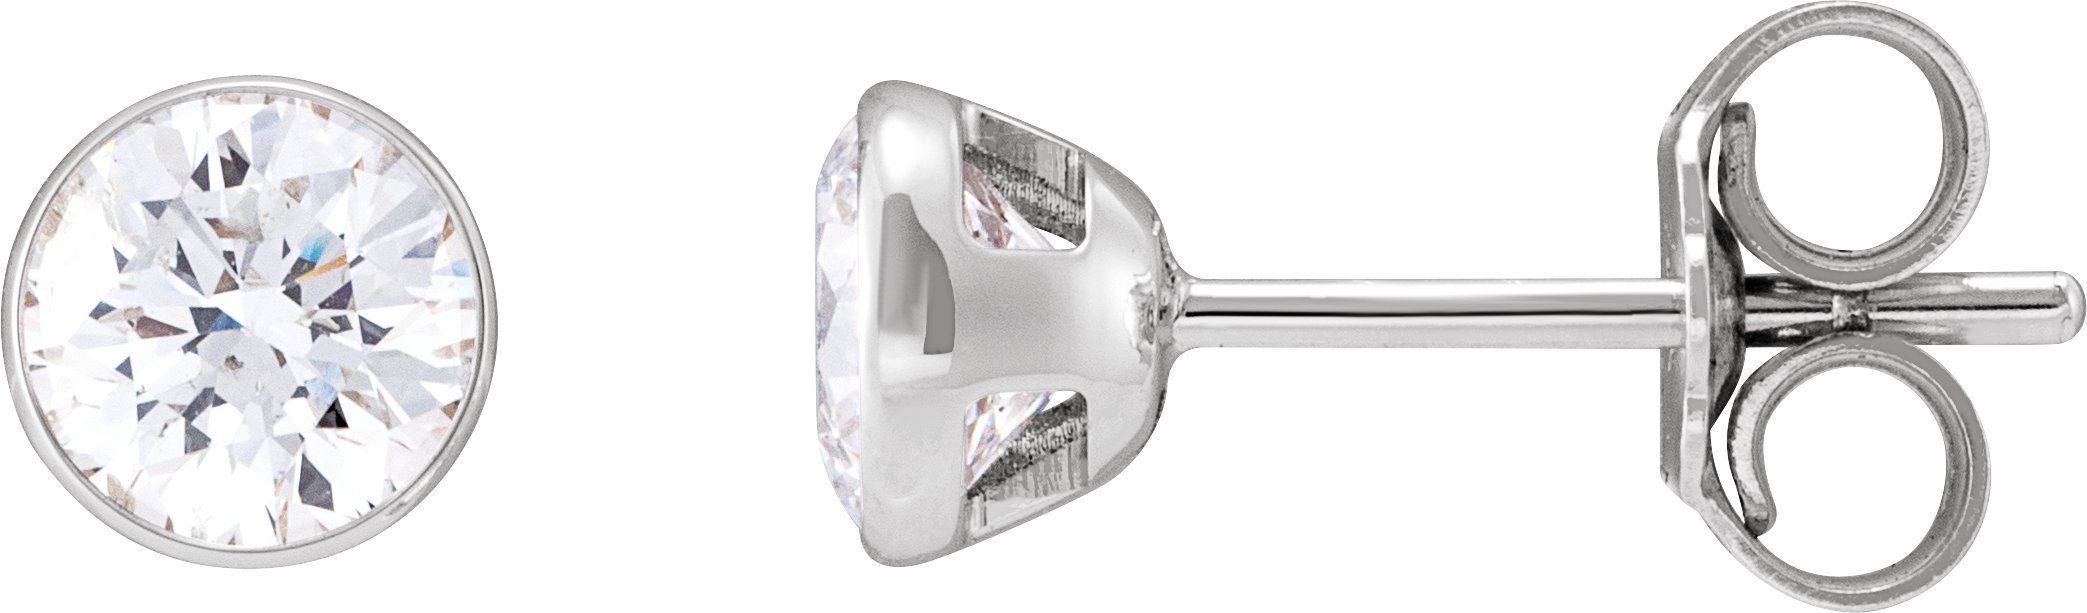 14K White 1 CTW Natural Diamond Ultra Light Stud Earrings